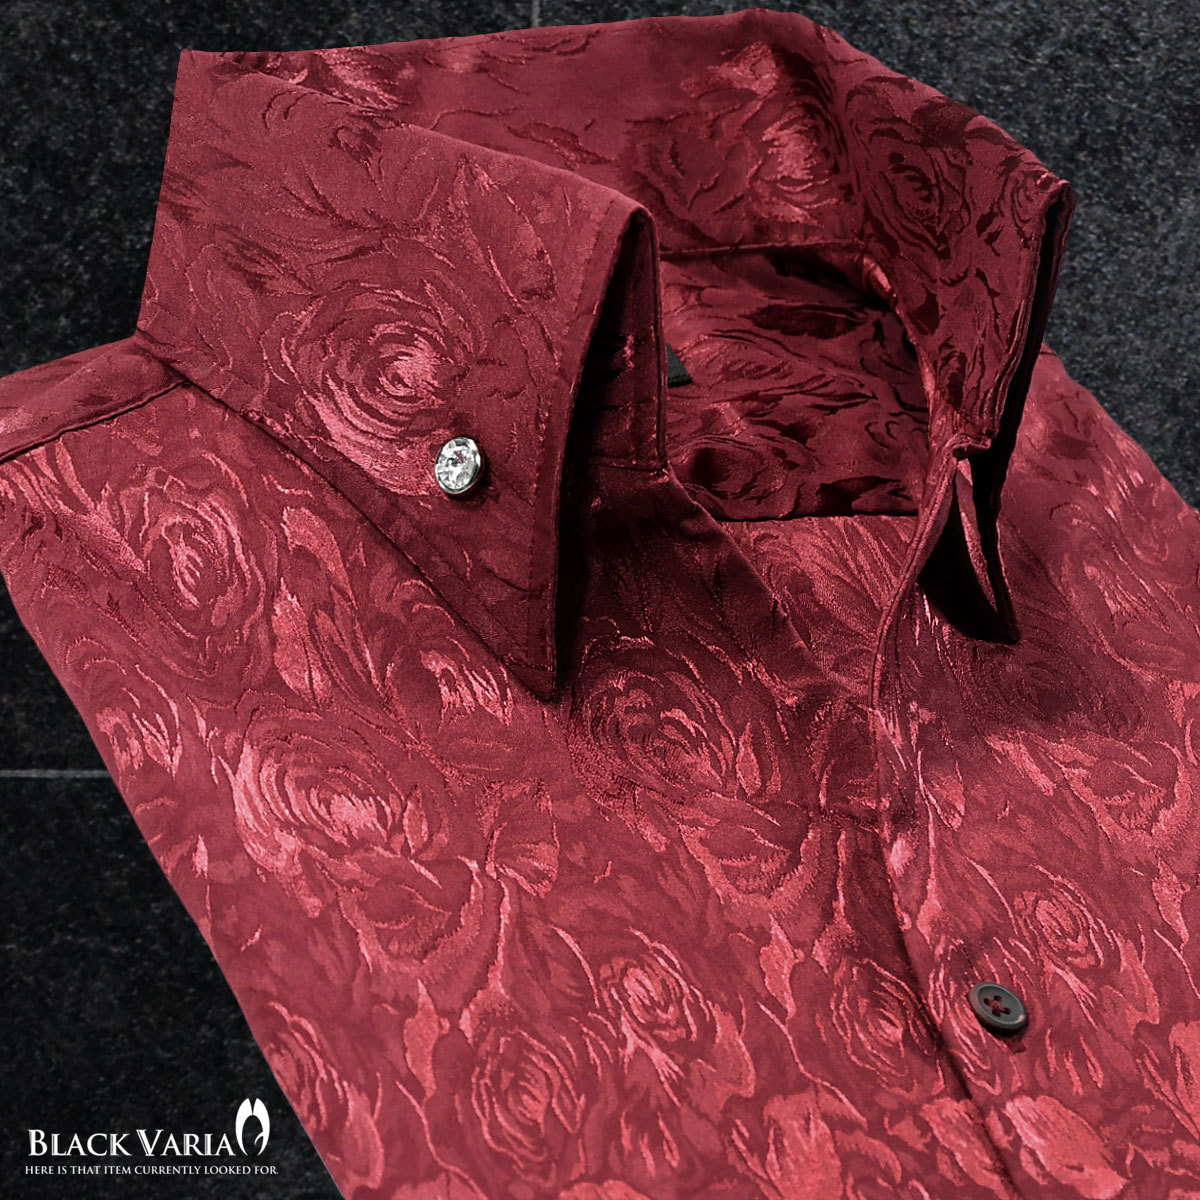 191254-win BLACK VARIA 薔薇 花柄 スキッパー ジャガード ボタンダウン ドレスシャツ スリム 無地 メンズ(ワインレッド赤) XL 舞台 衣装_画像1